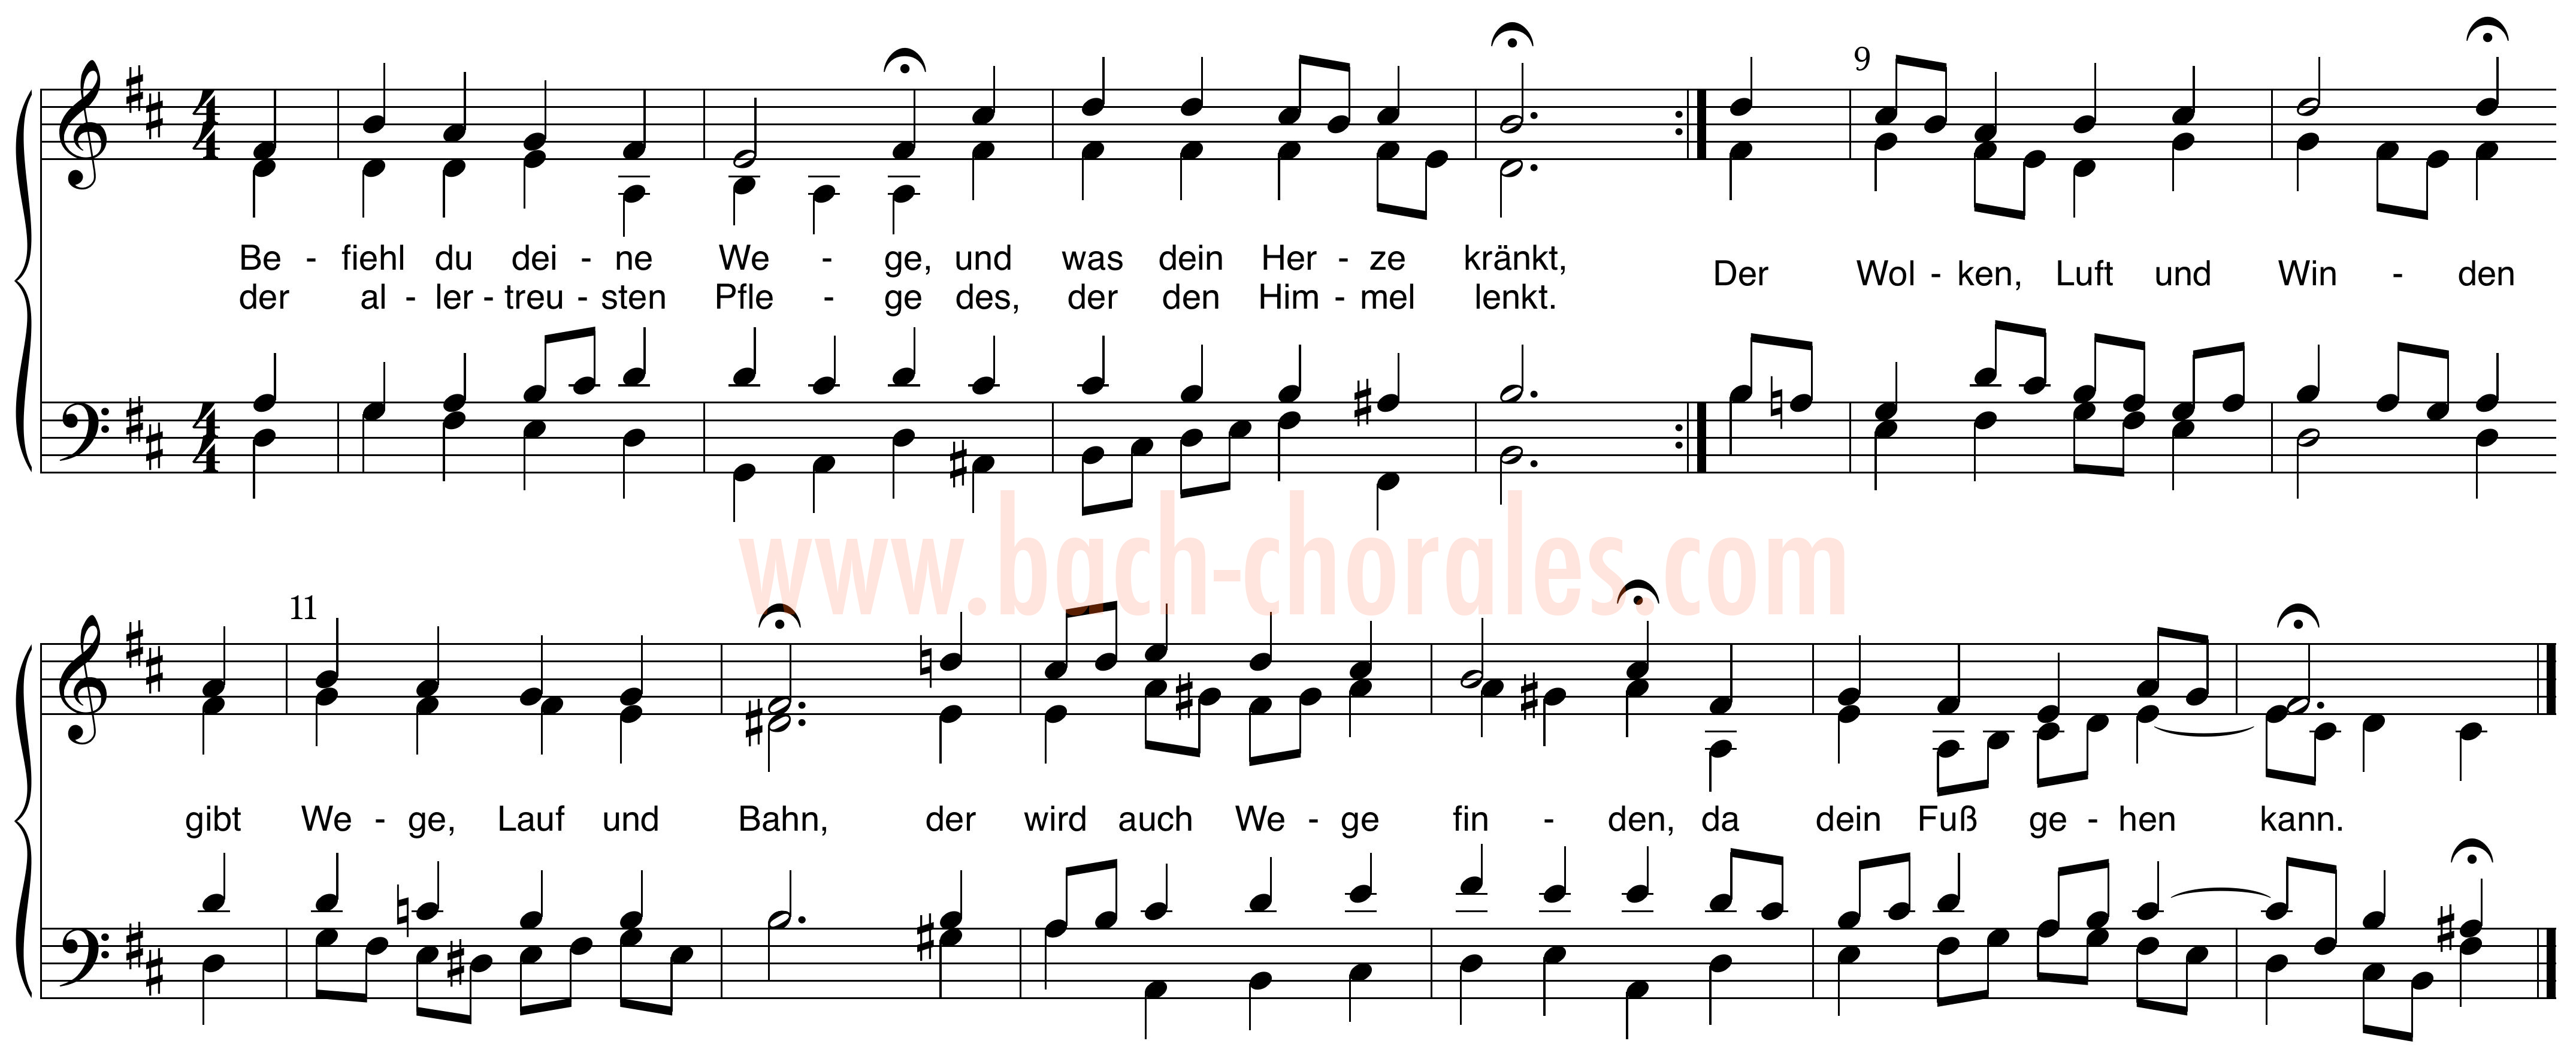 notenbeeld BWV 271 op https://www.bach-chorales.com/